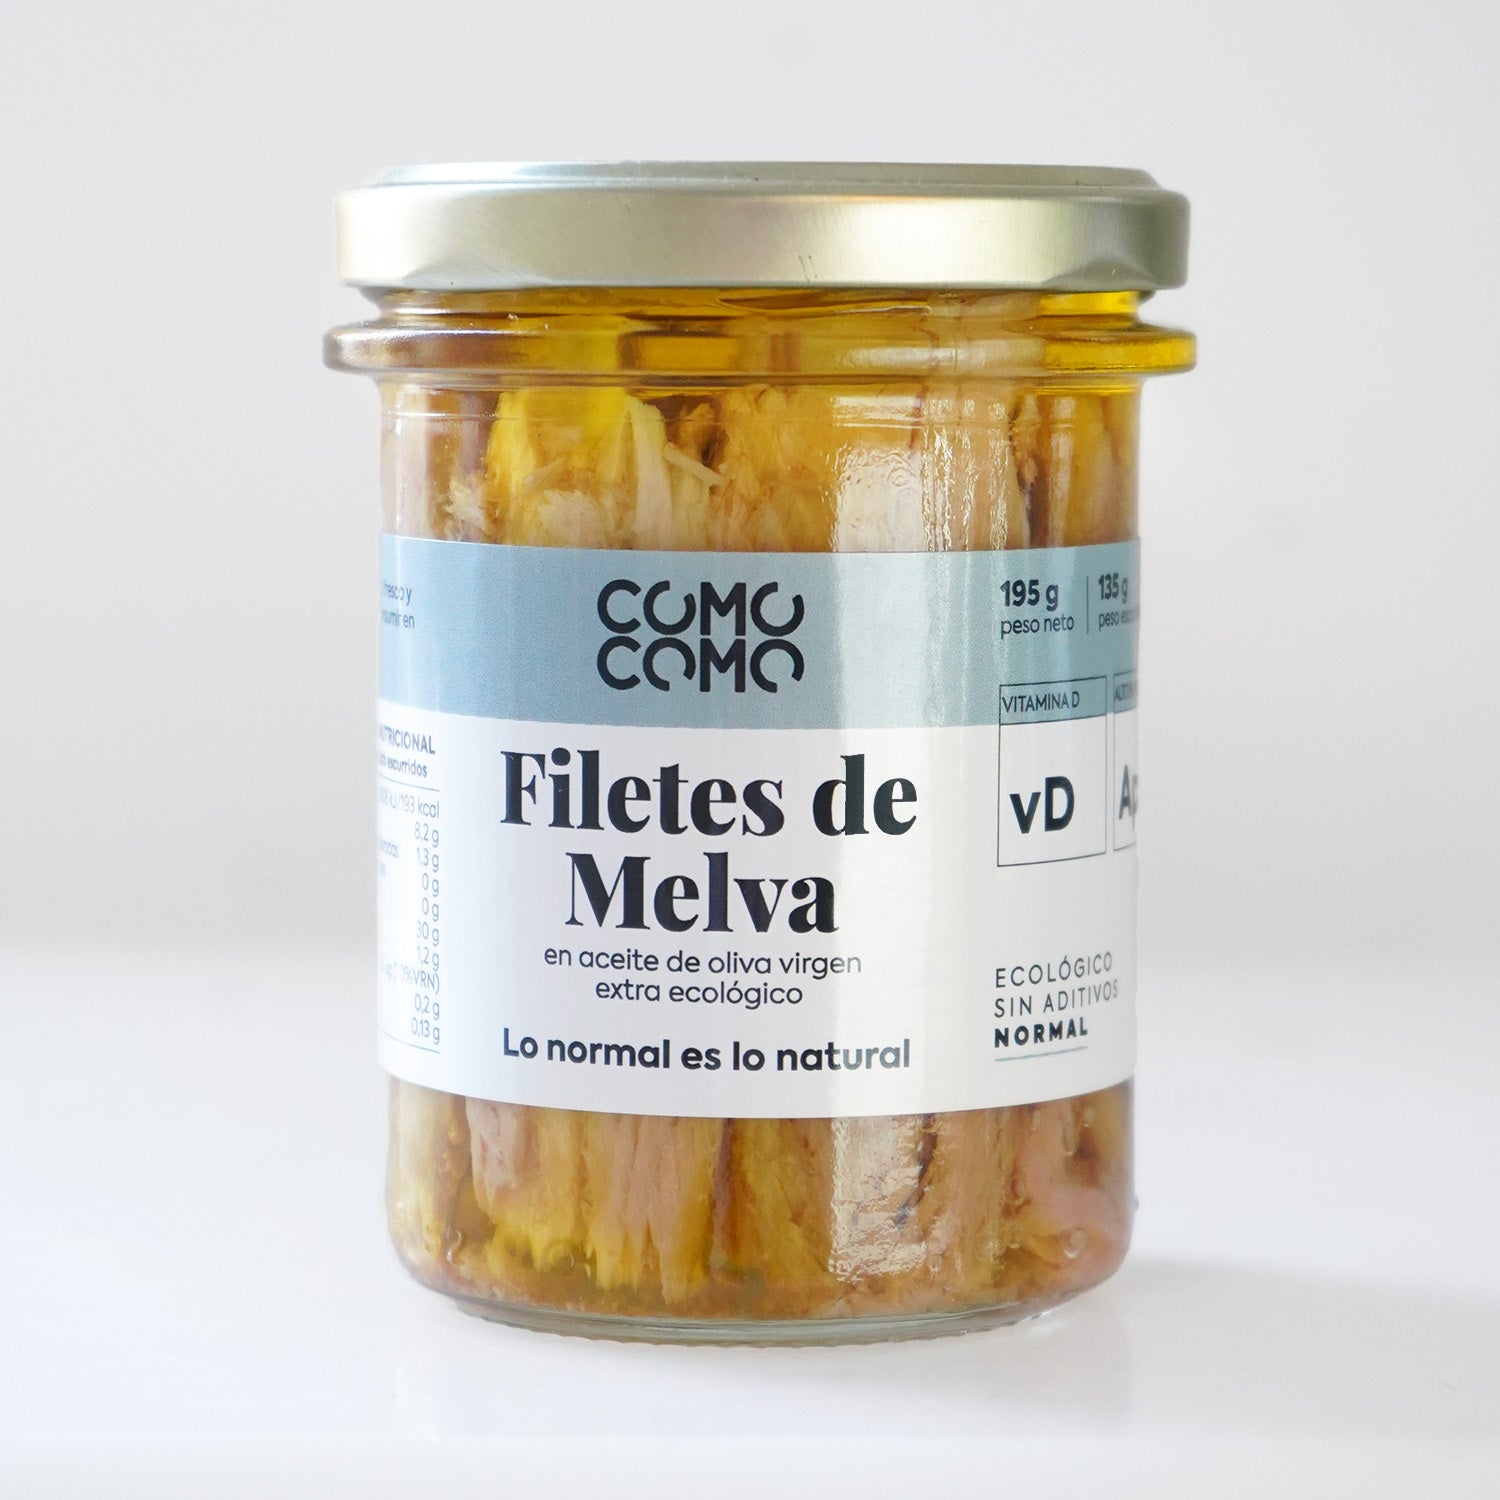 Tarro de cristal con filetes de melva en aceite de oliva